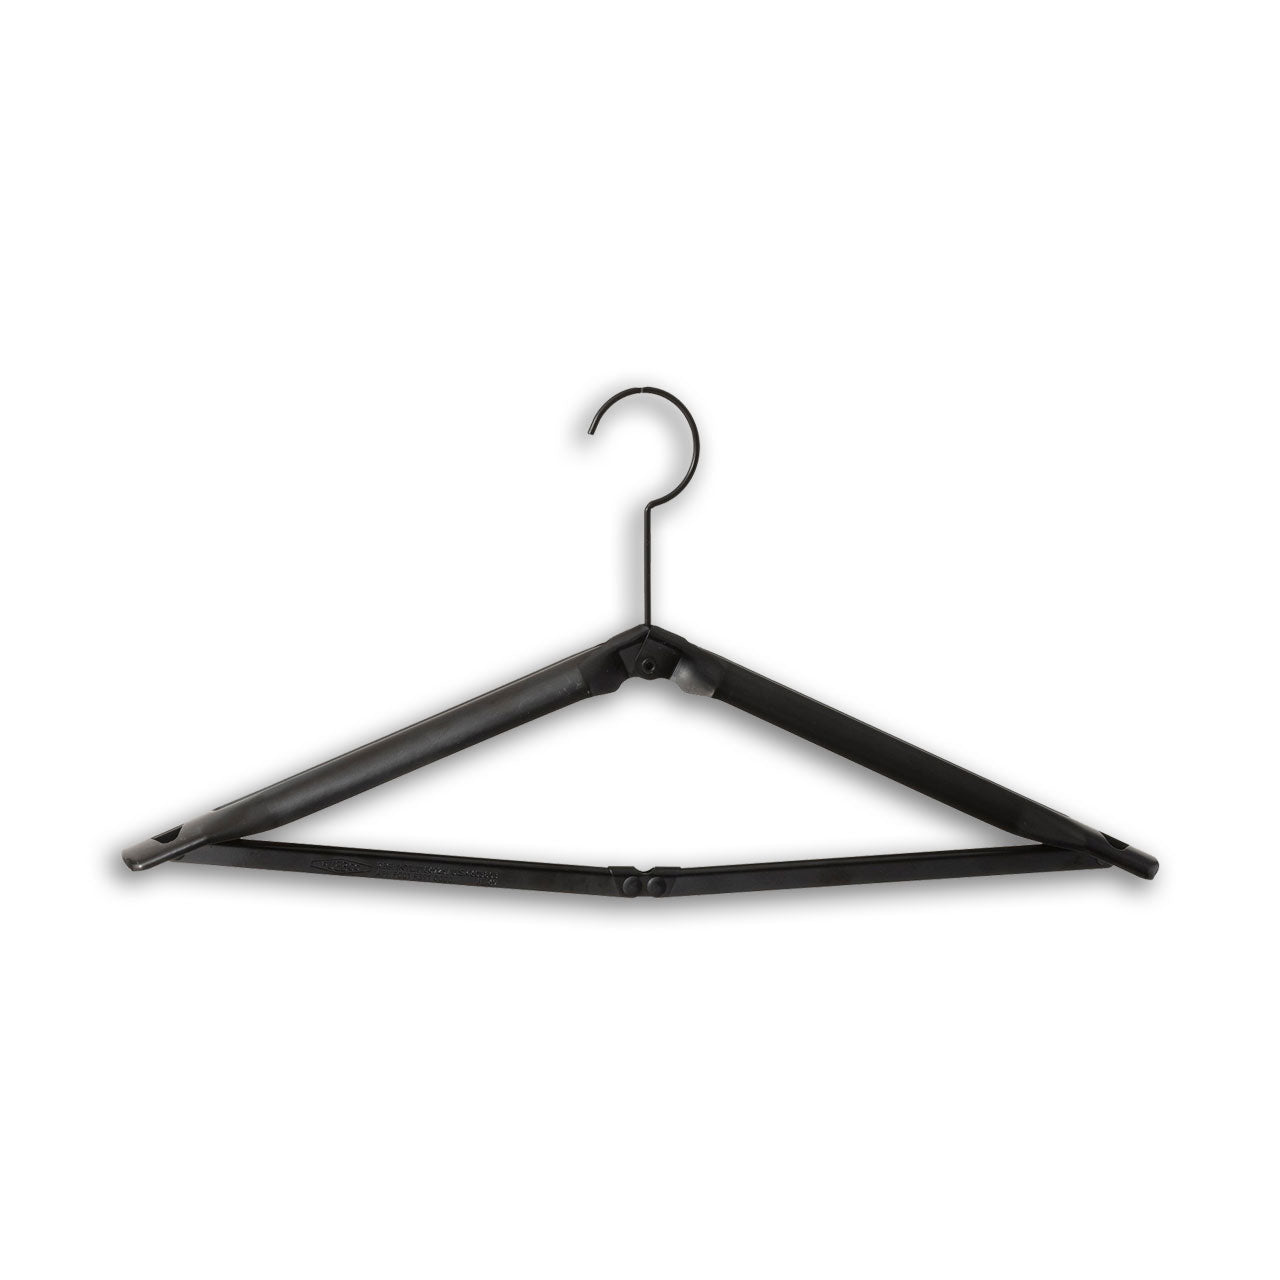 http://shop.uncrate.com/cdn/shop/products/puebco-coat-hanger-black-3.jpg?v=1622136156